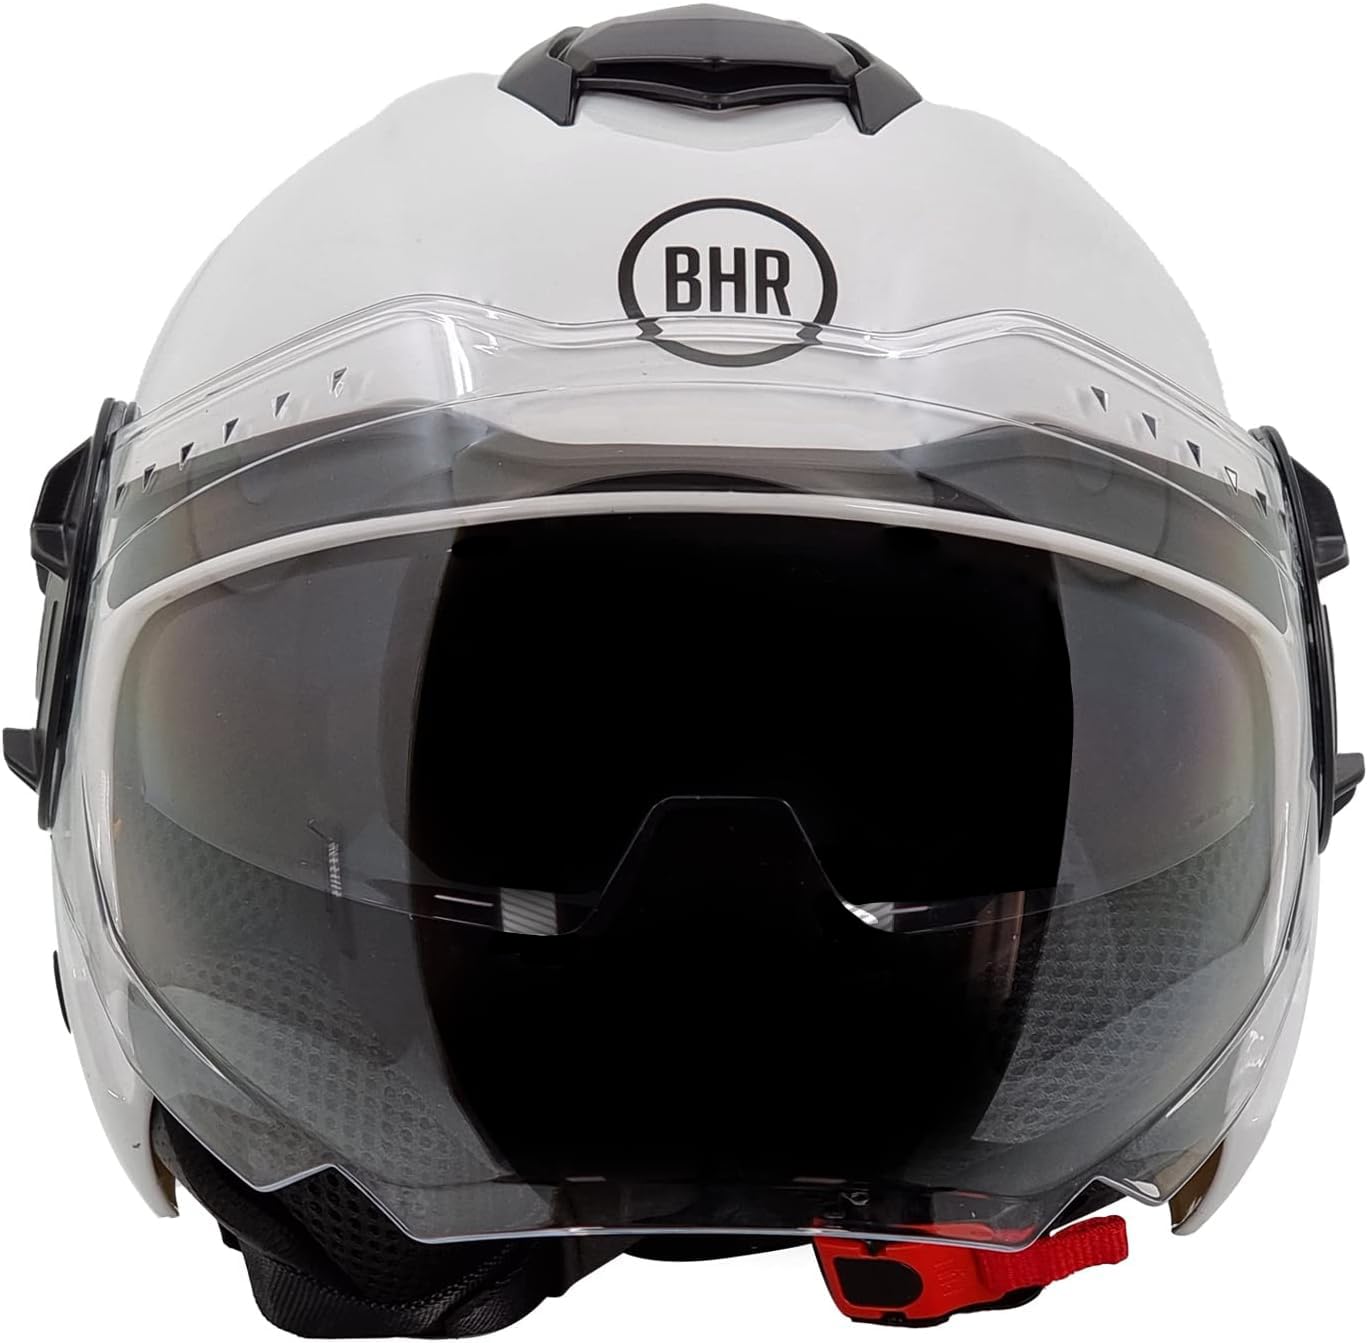 BHR Jet Helm Double Visor 830 Flash, Scooter Helm mit ECE 22.06 Zulassung, Leichter & komfortabler Jet Helm mit innenliegender Sonnenblende, Weiß, XL von BHR